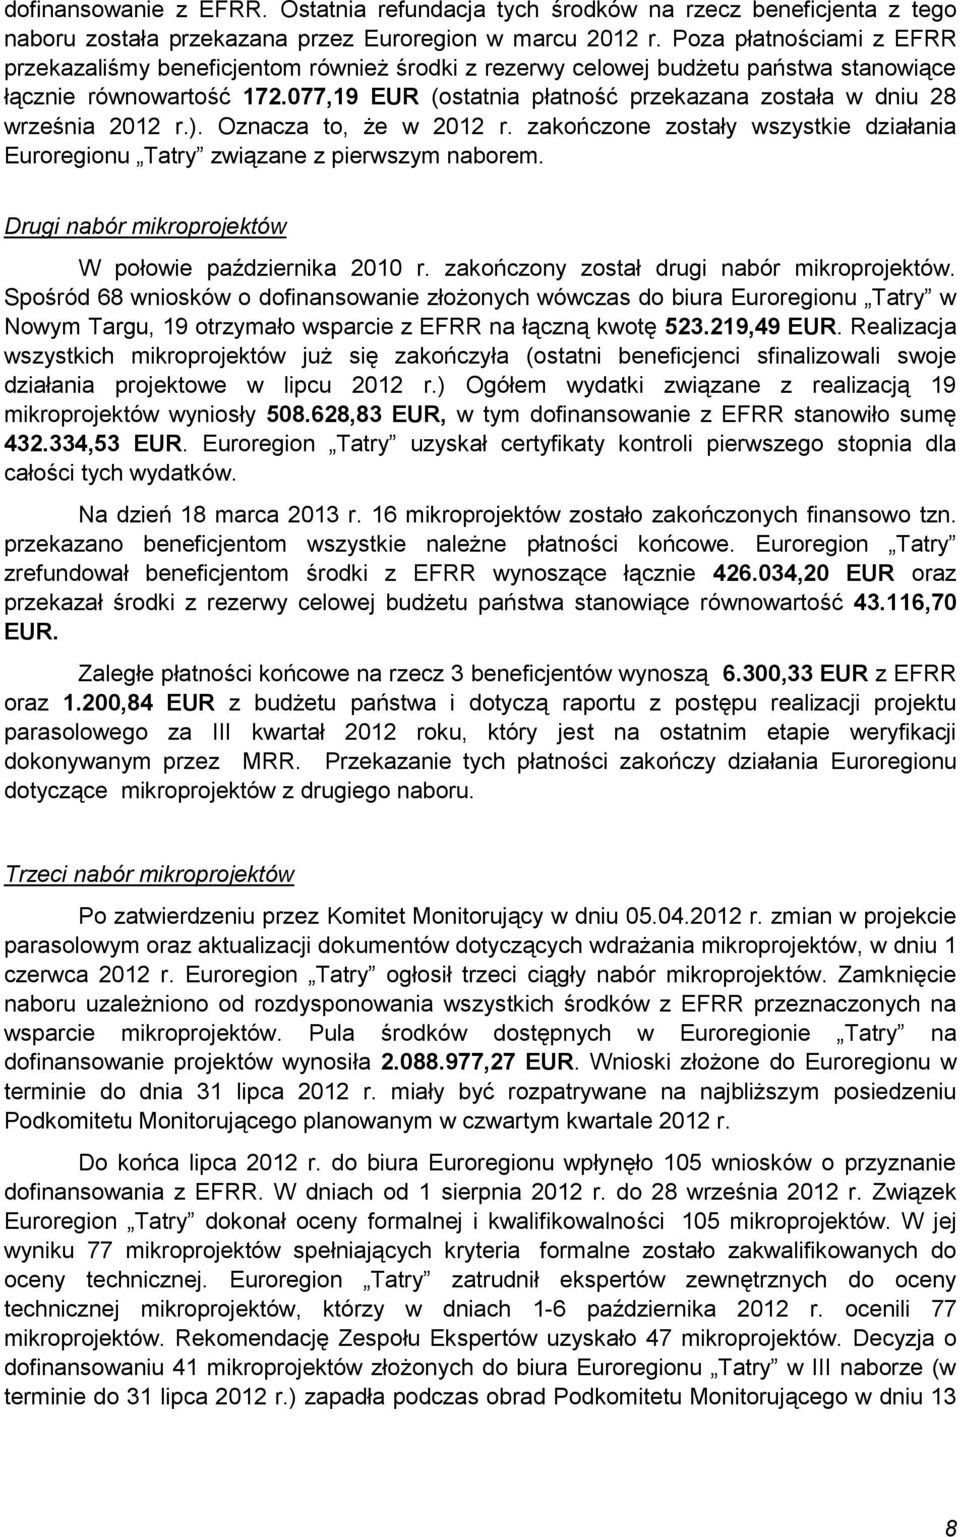 077,19 EUR (ostatnia płatność przekazana została w dniu 28 września 2012 r.). Oznacza to, że w 2012 r. zakończone zostały wszystkie działania Euroregionu Tatry związane z pierwszym naborem.